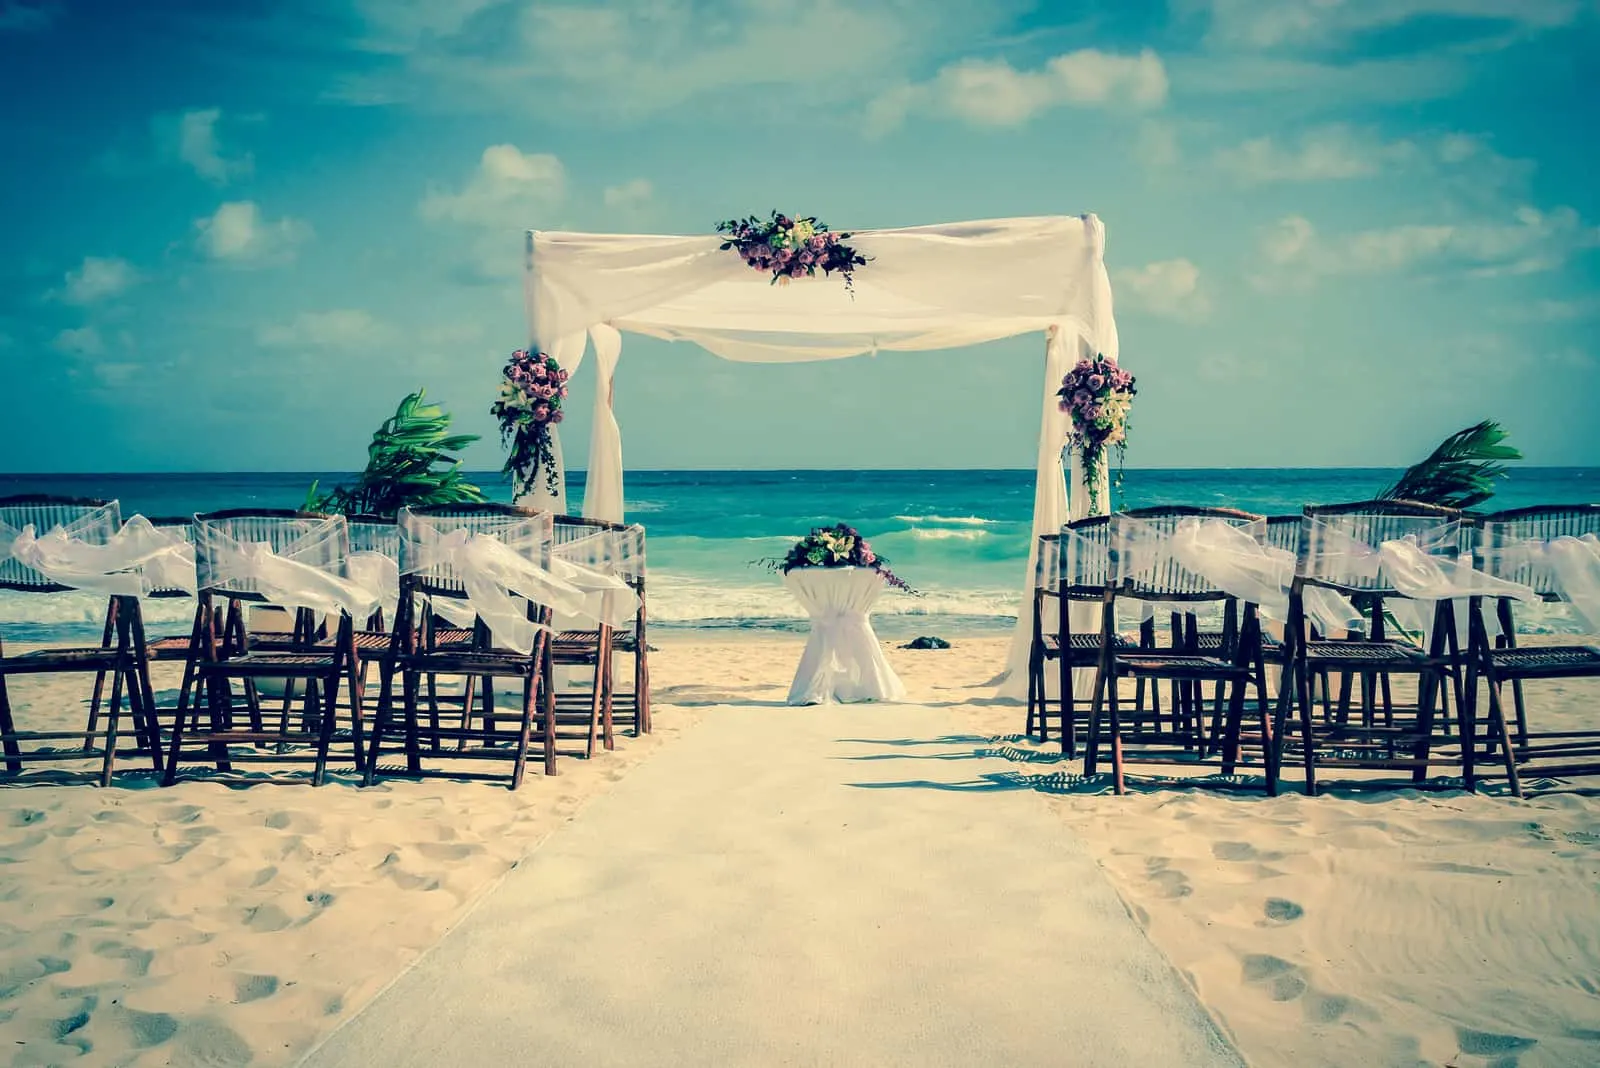 Hochzeitsaltar am Strand in Mexiko mit karibischem Meer im Hintergrund